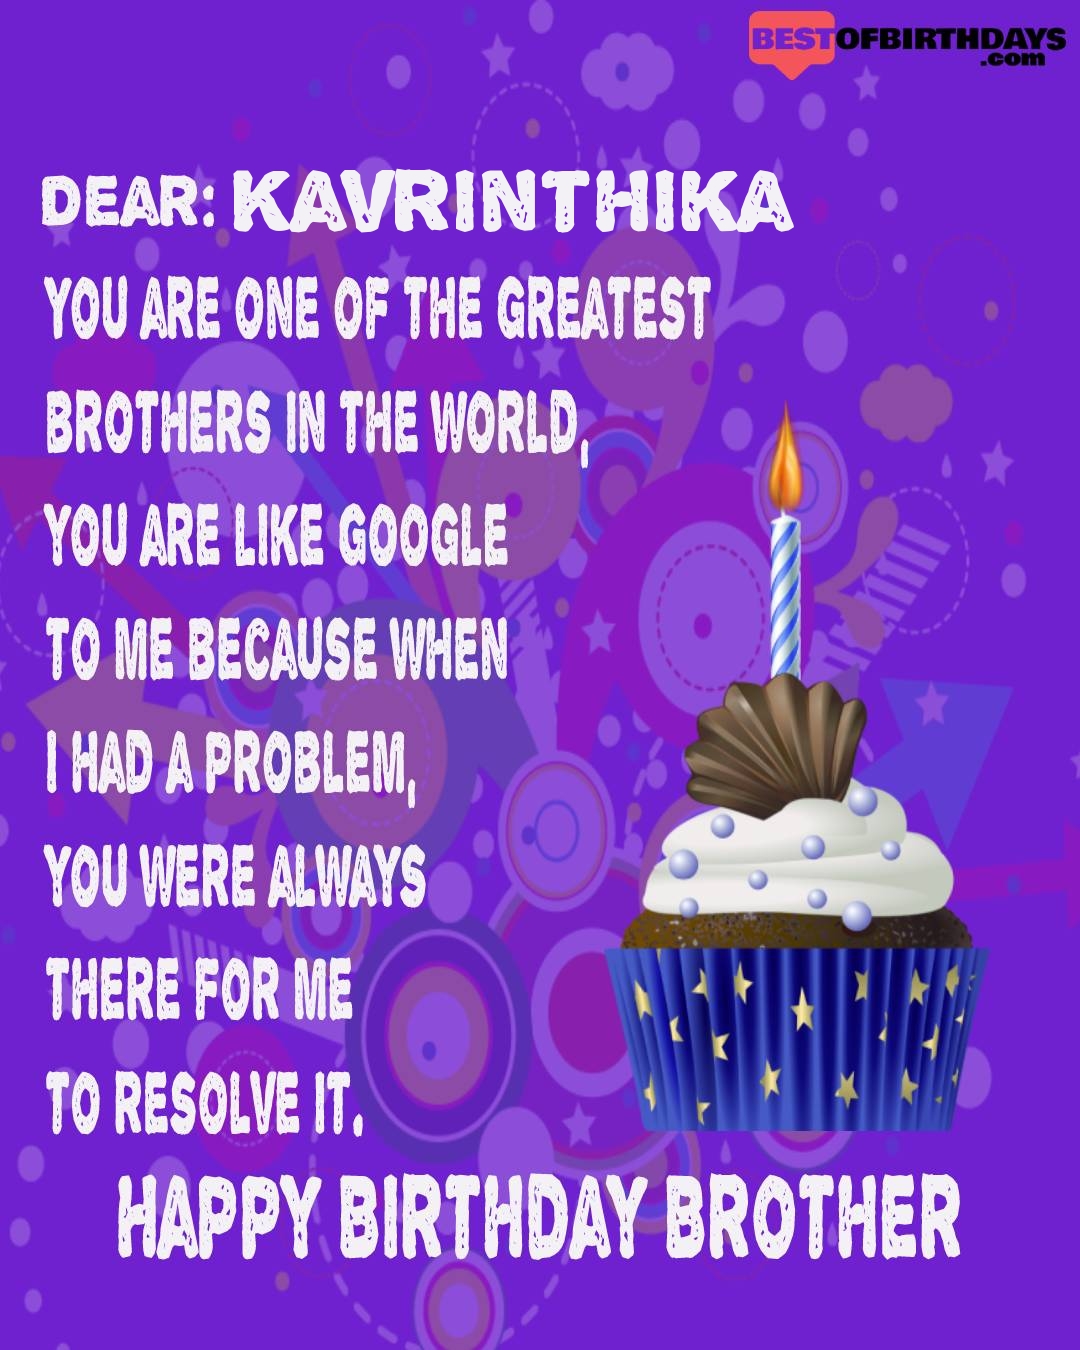 Happy birthday kavrinthika bhai brother bro